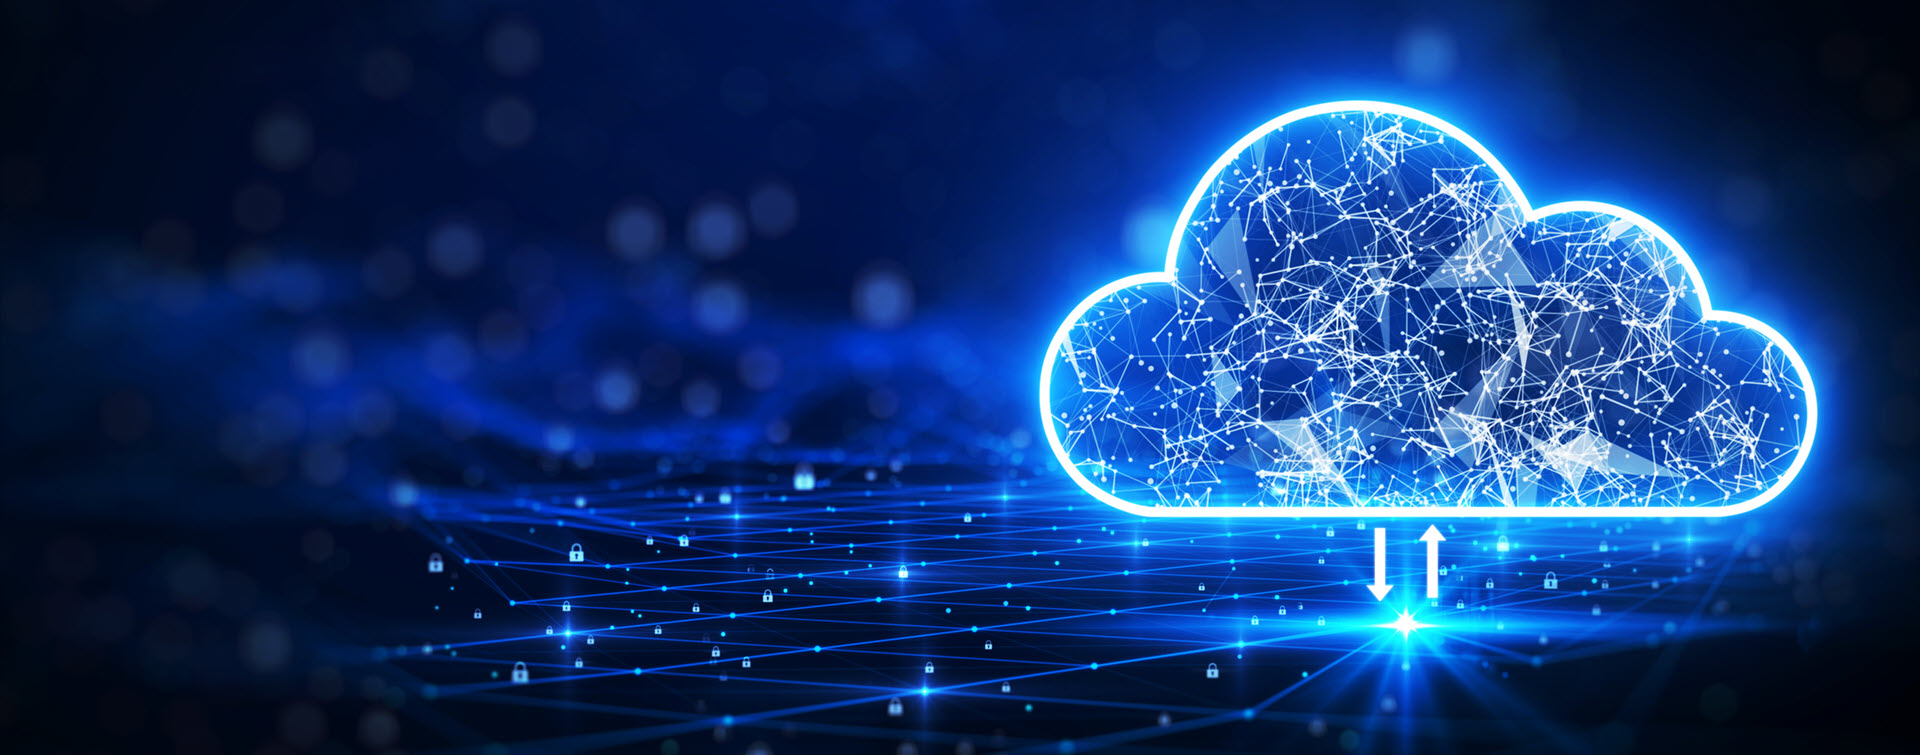 使用NetSecOps准备云迁移和安全网络操作的5个关键